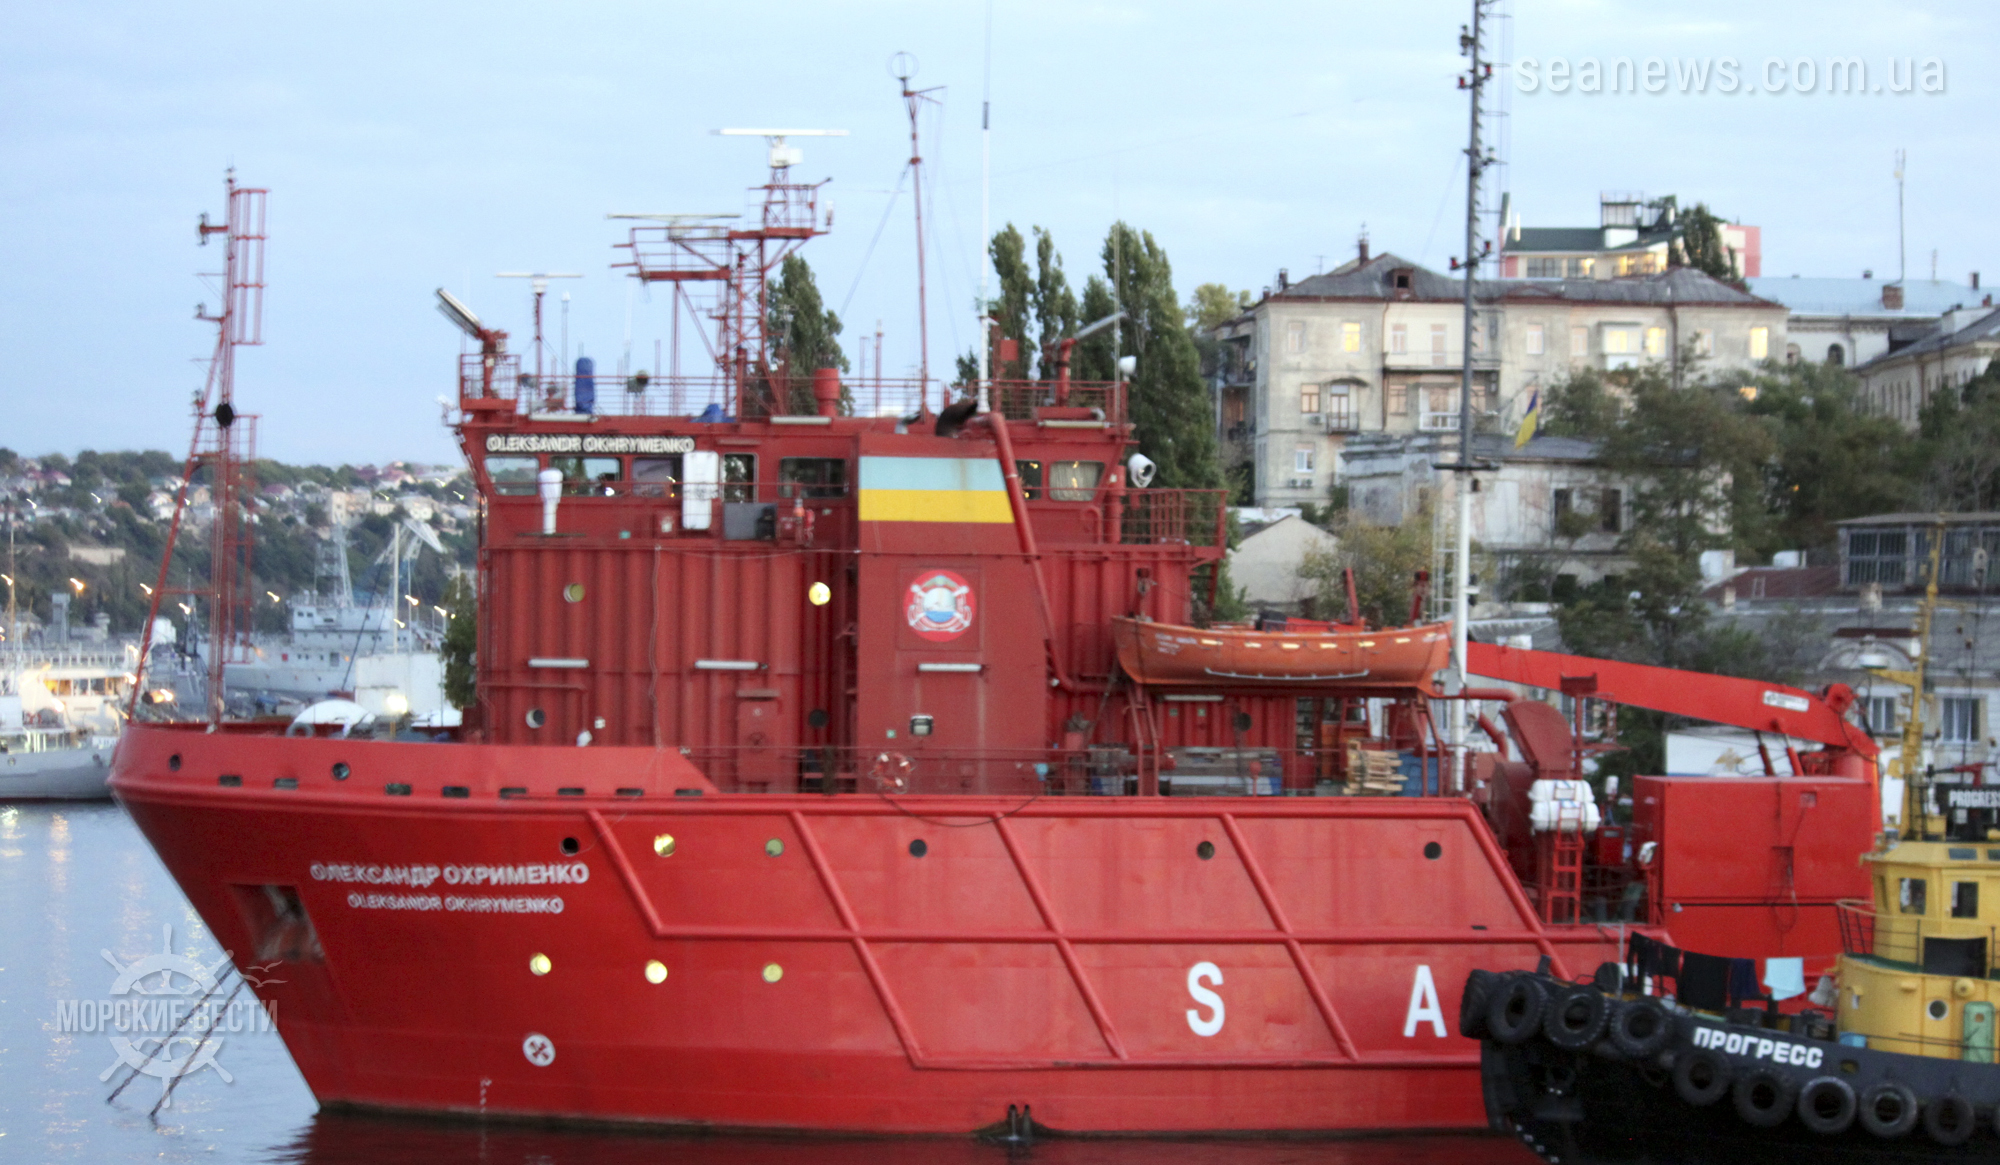 Министерство инфраструктуры Украины передаст военному флоту аварийно-спасательное судно